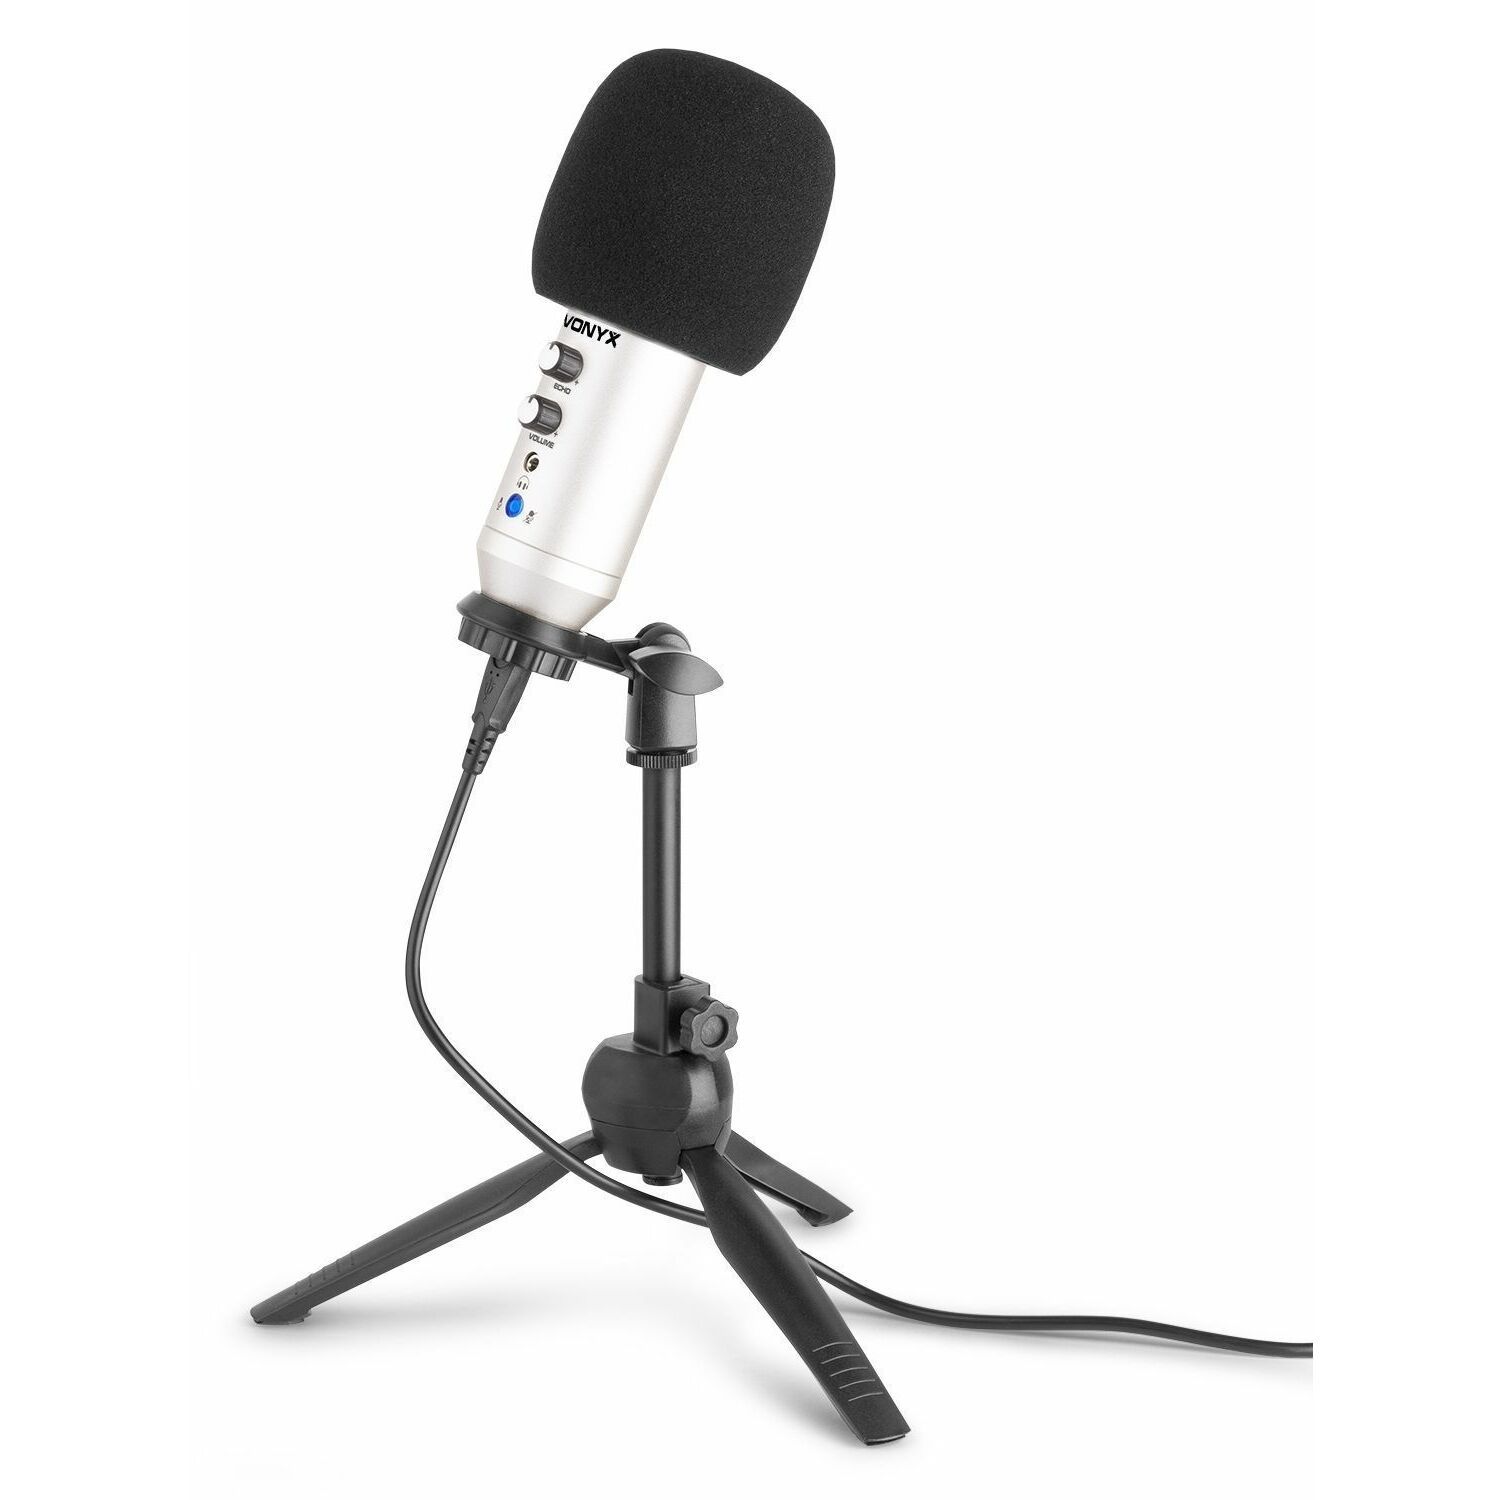 Mondstuk afstuderen Verdragen Vonyx CM320S USB studio microfoon met tafelstandaard - Titanium kopen?